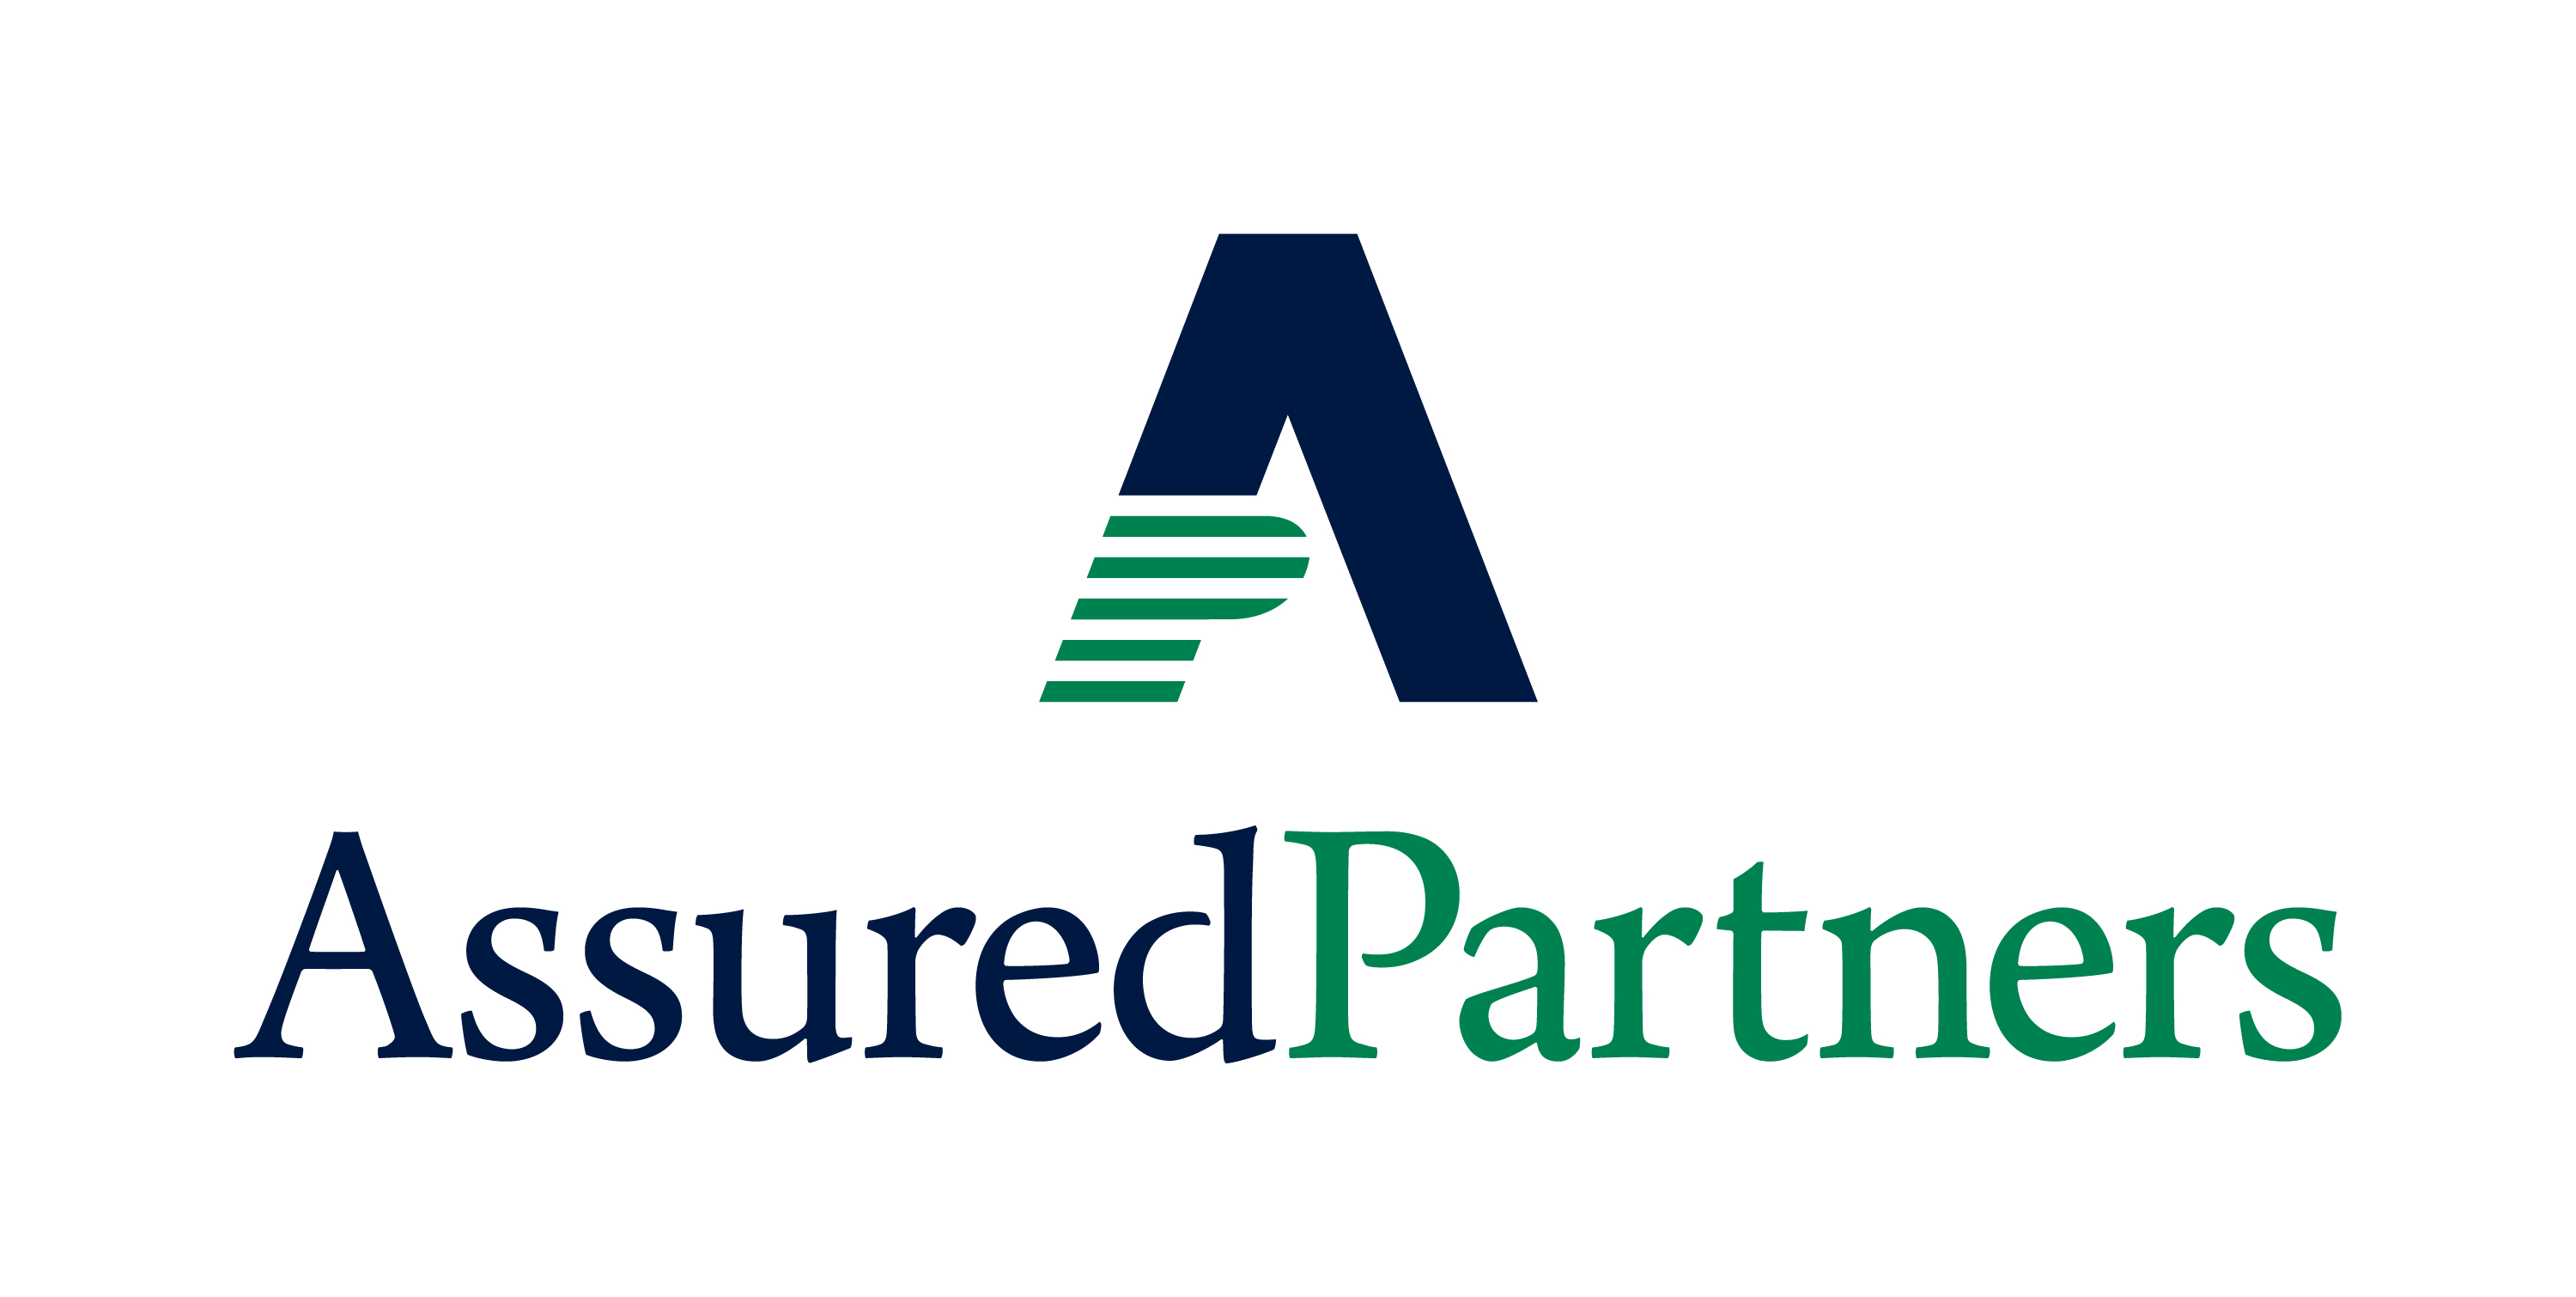 P. Assured Partners (Tier 3)